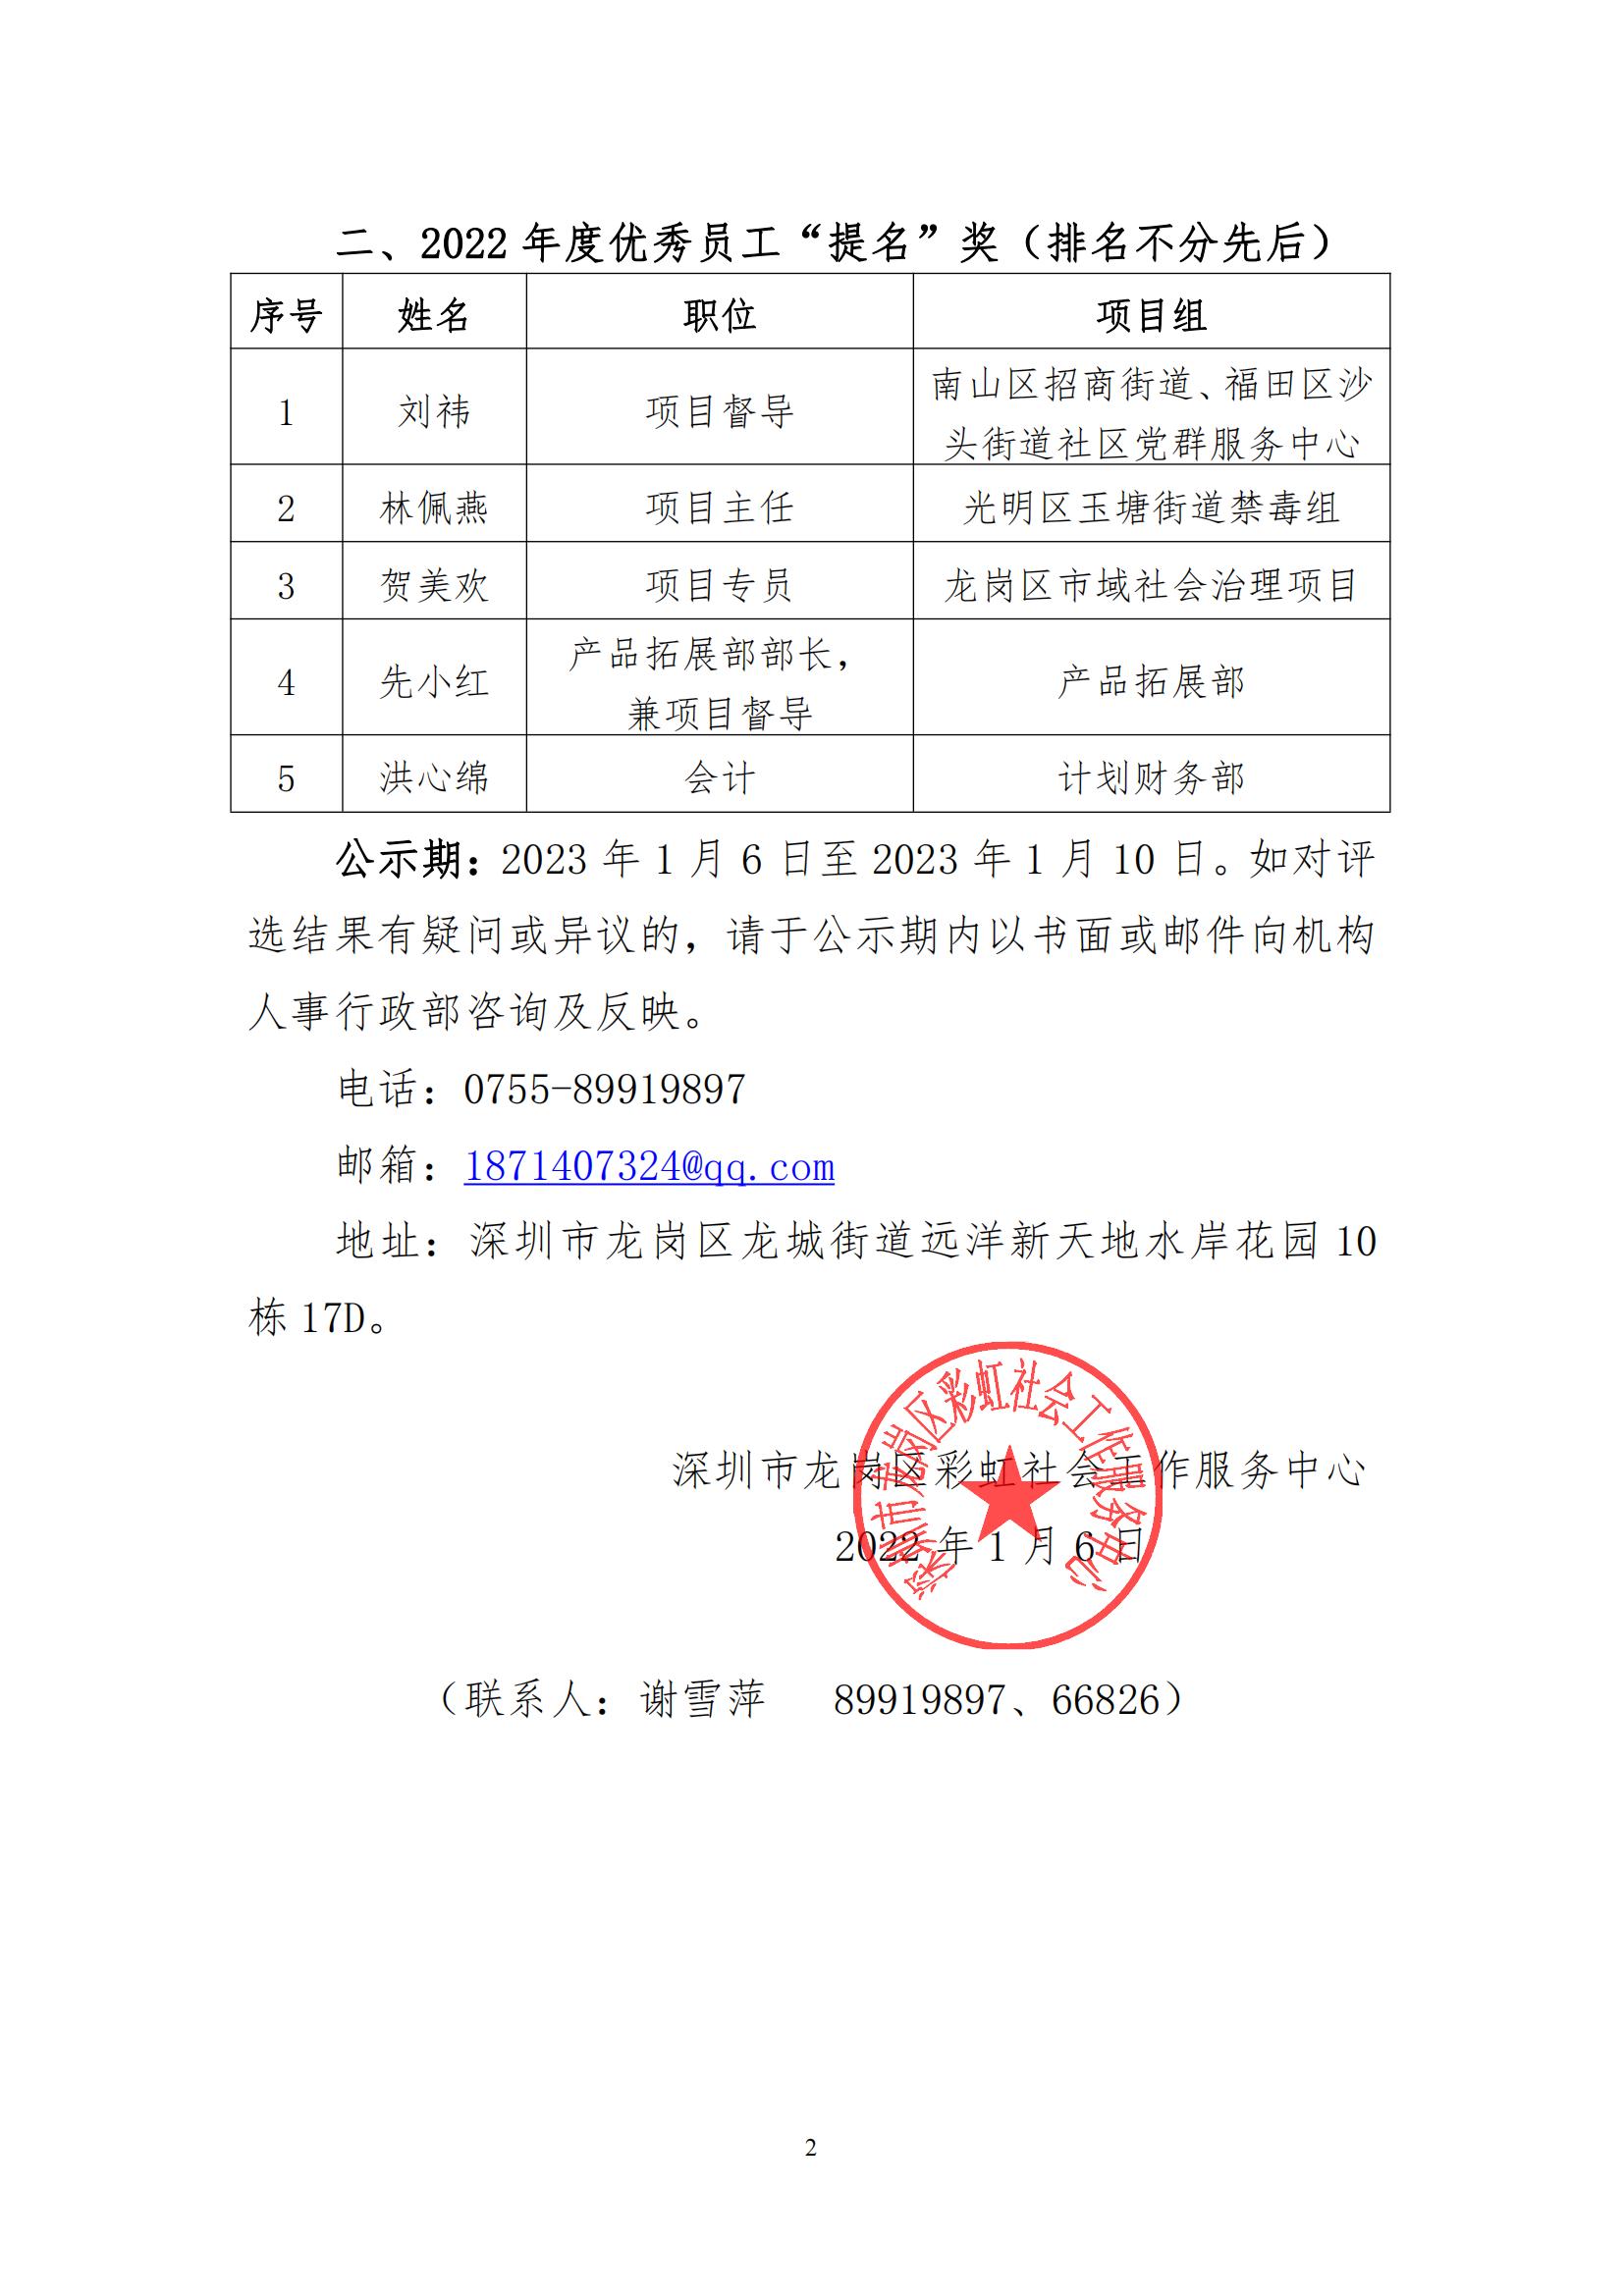 彩通字(2023)2-关于机构2022年度优秀员工评选结果公示的通知_已签章_01.jpg